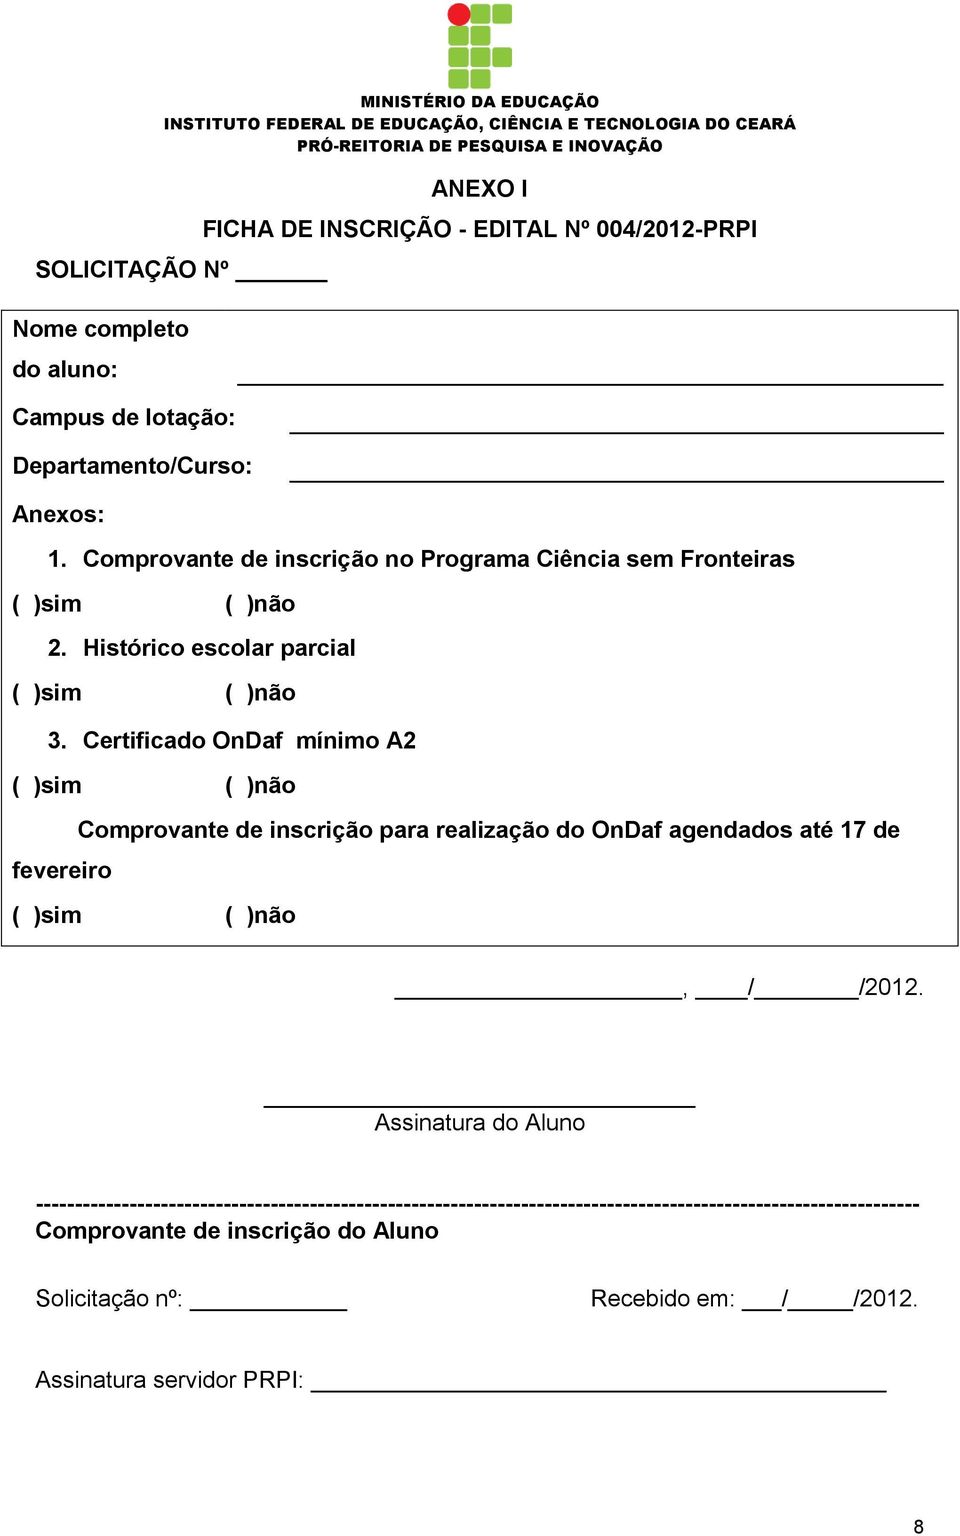 Certificado OnDaf mínimo A2 ( )sim ( )não fevereiro Comprovante de inscrição para realização do OnDaf agendados até 17 de ( )sim ( )não, / /2012.